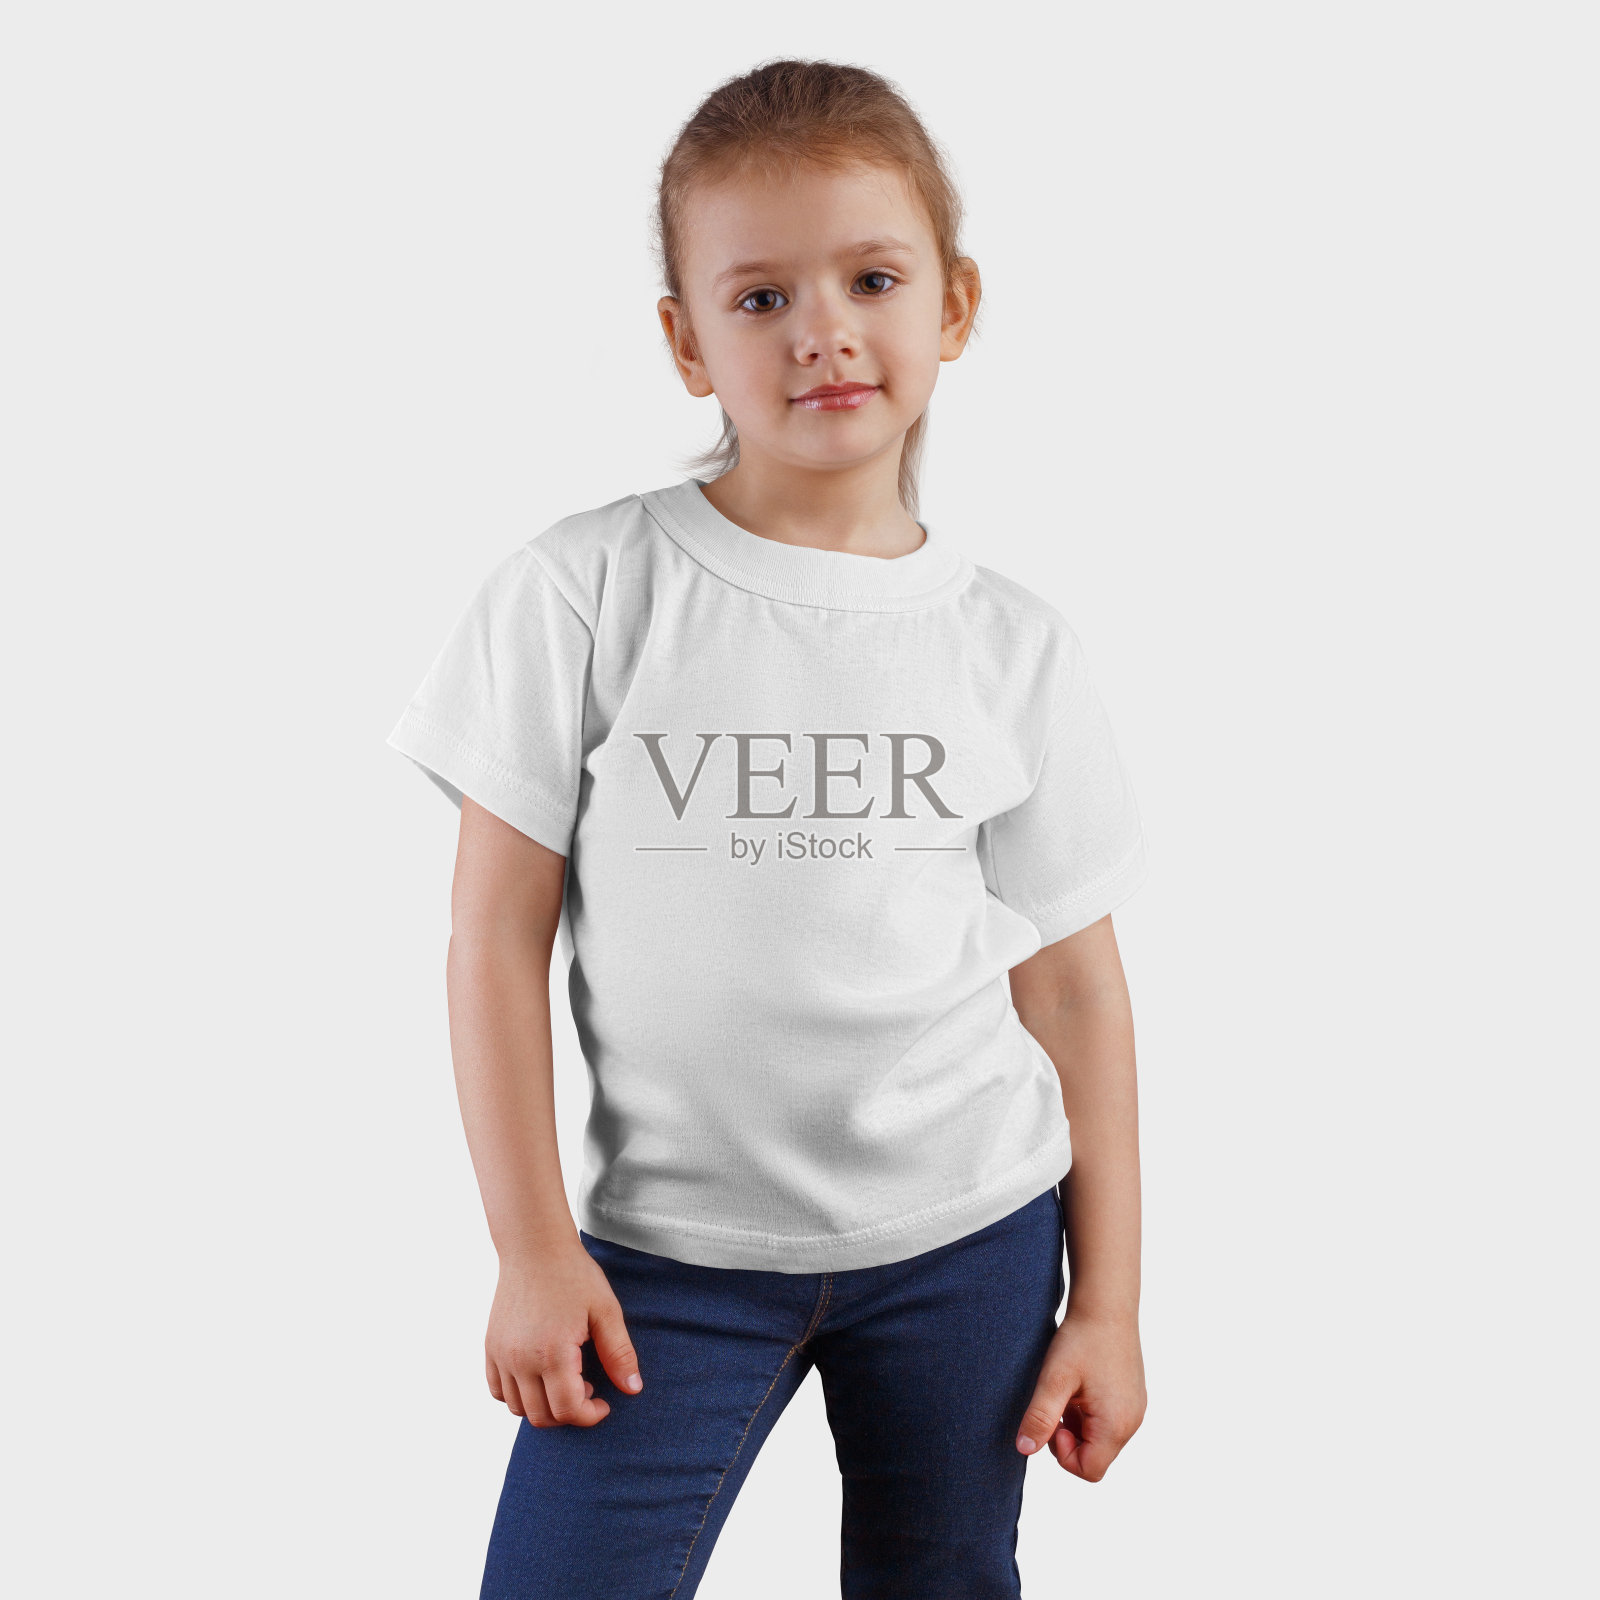 白色t恤的模型在一个微笑的孩子在蓝色牛仔裤，展示的儿童服装的设计和模式。照片摄影图片